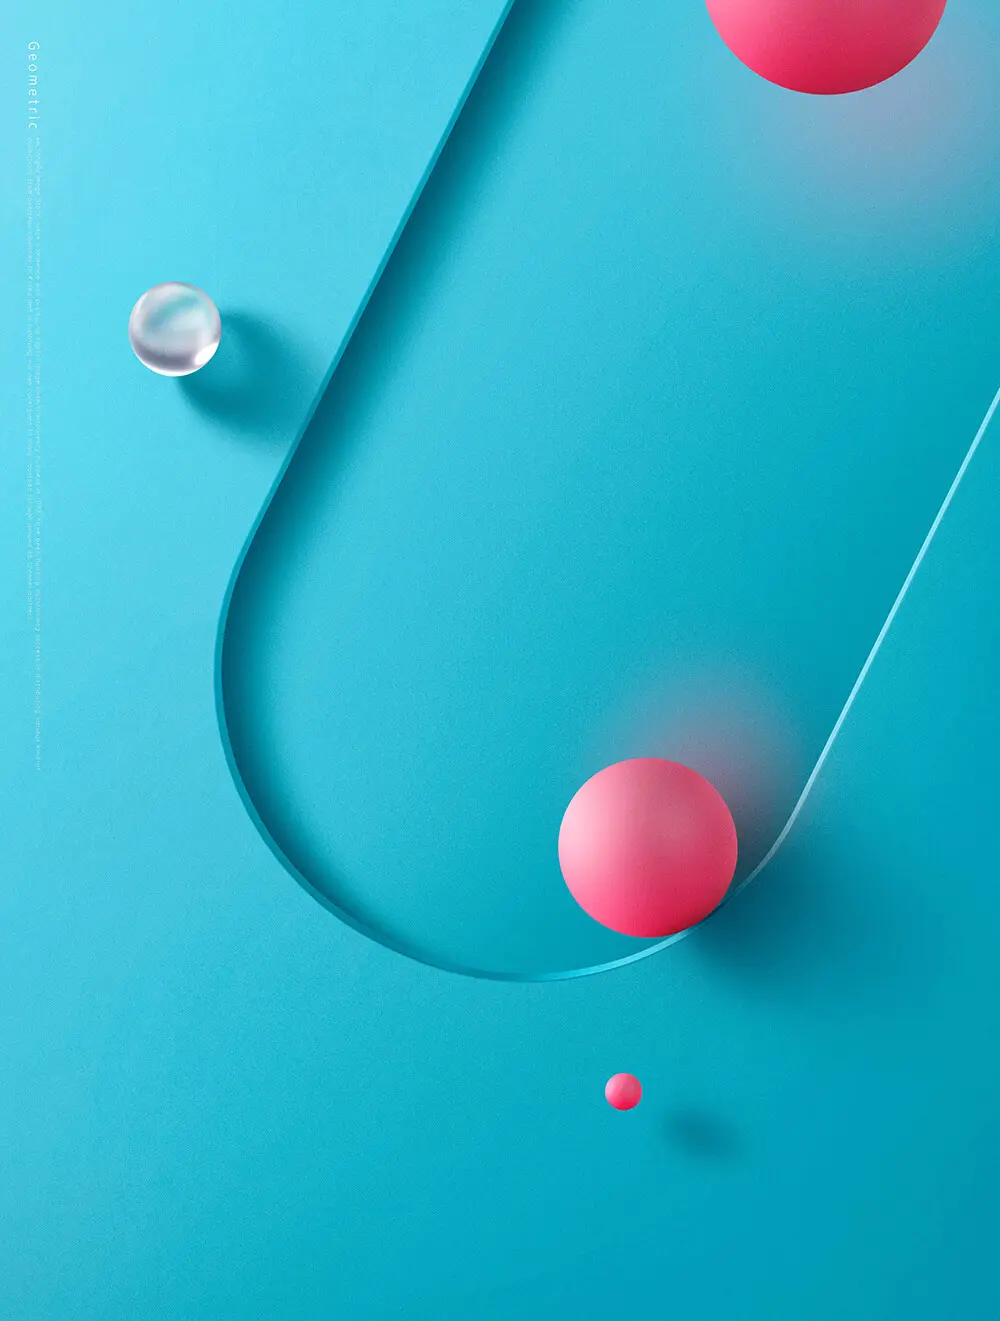 圆球元素简约蓝色空间海报背景素材 (psd)插图